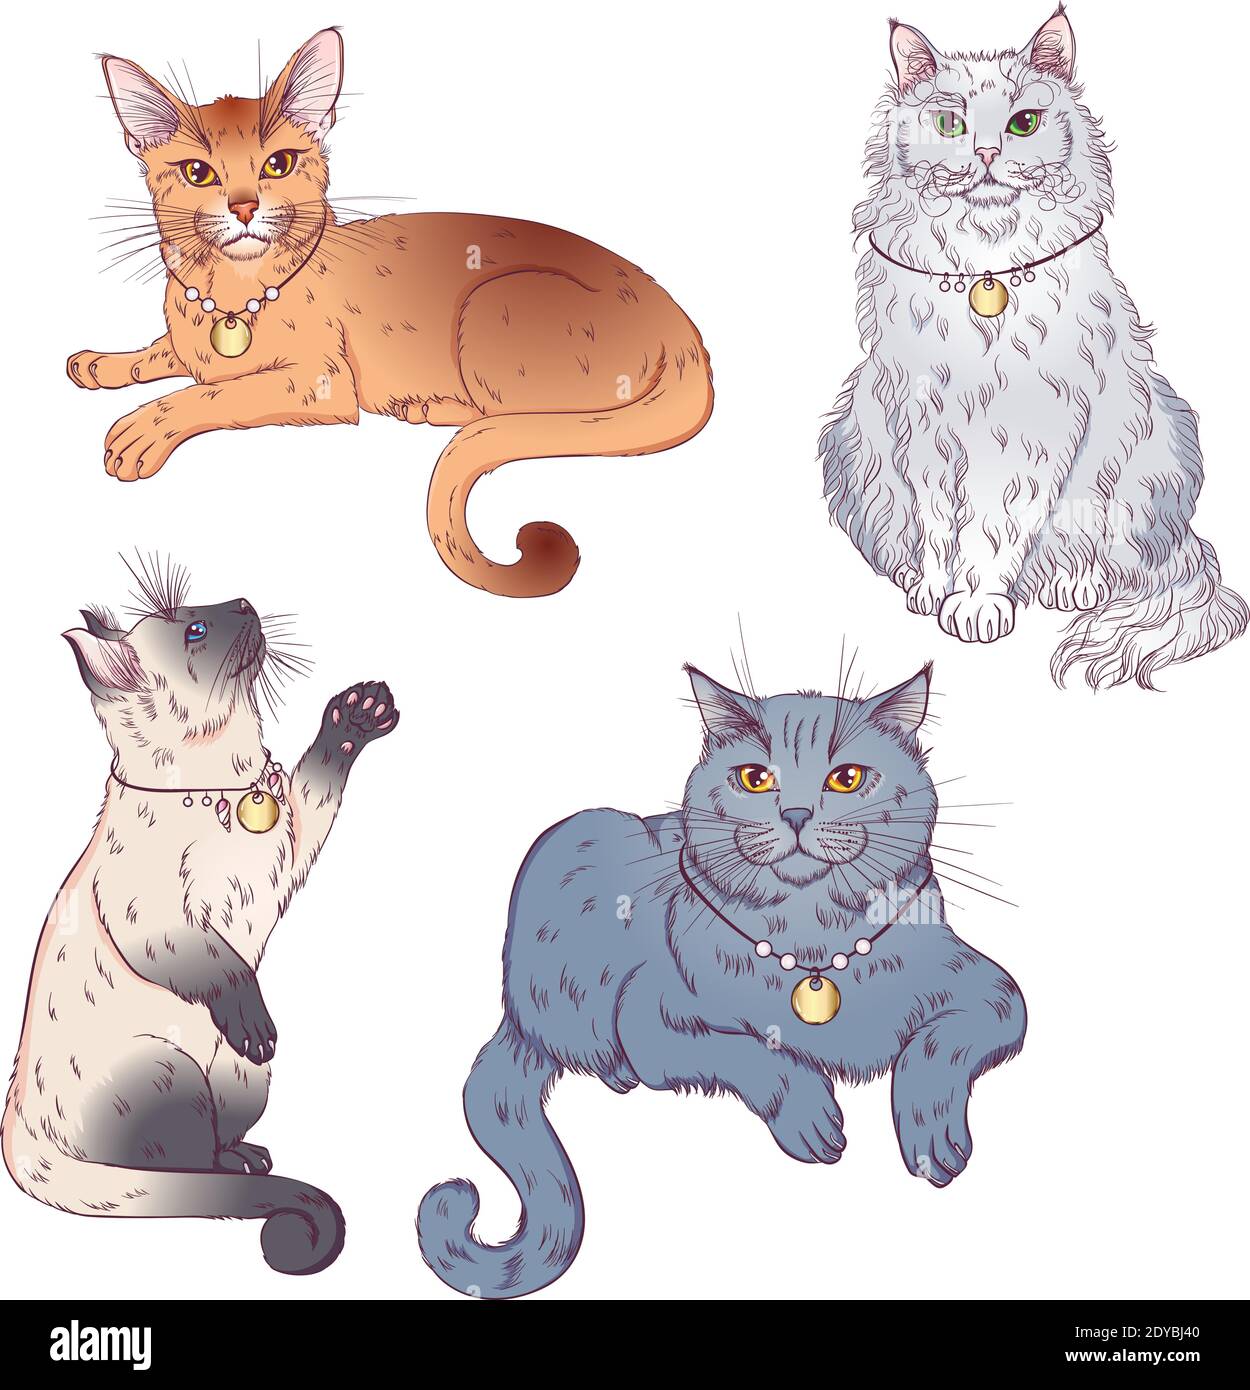 Set von niedlichen Cartoon Kätzchen oder Katzen mit verschiedenen farbigen Fell und Markierungen stehen, sitzen. Vektorgrafiken isoliert auf weißem Hintergrund. Katzenposter. Stock Vektor